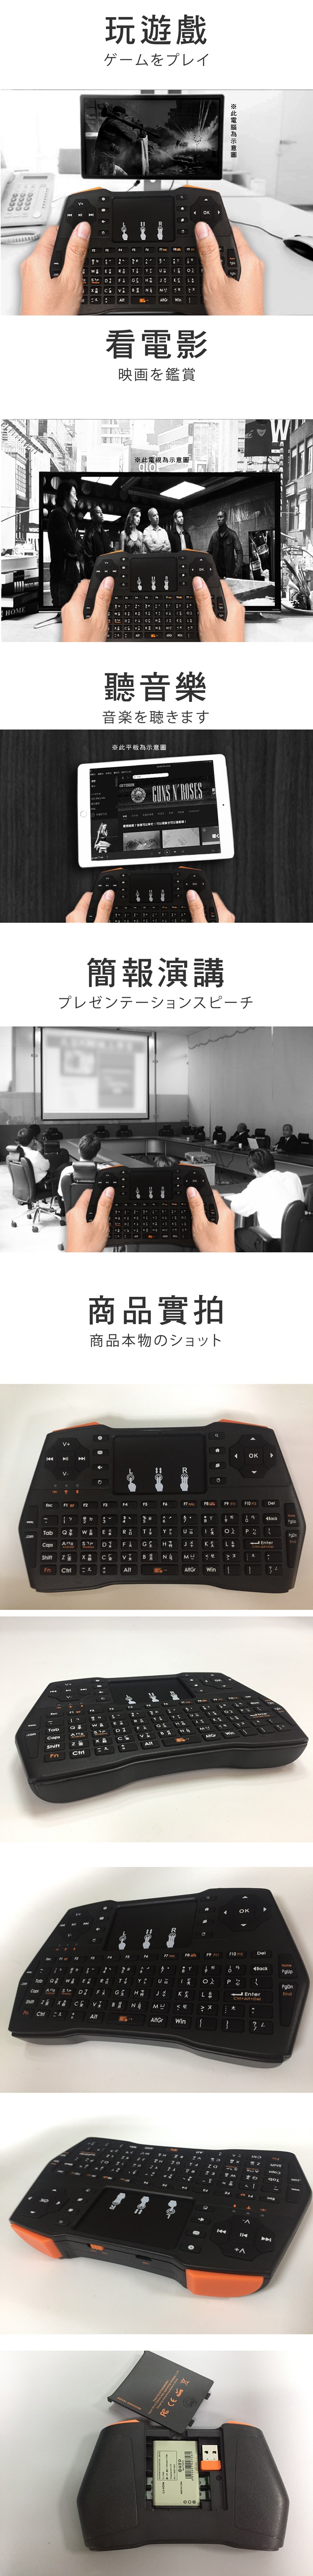 【升級版】u-ta掌上型多功能無線鍵盤PC1(公司貨)